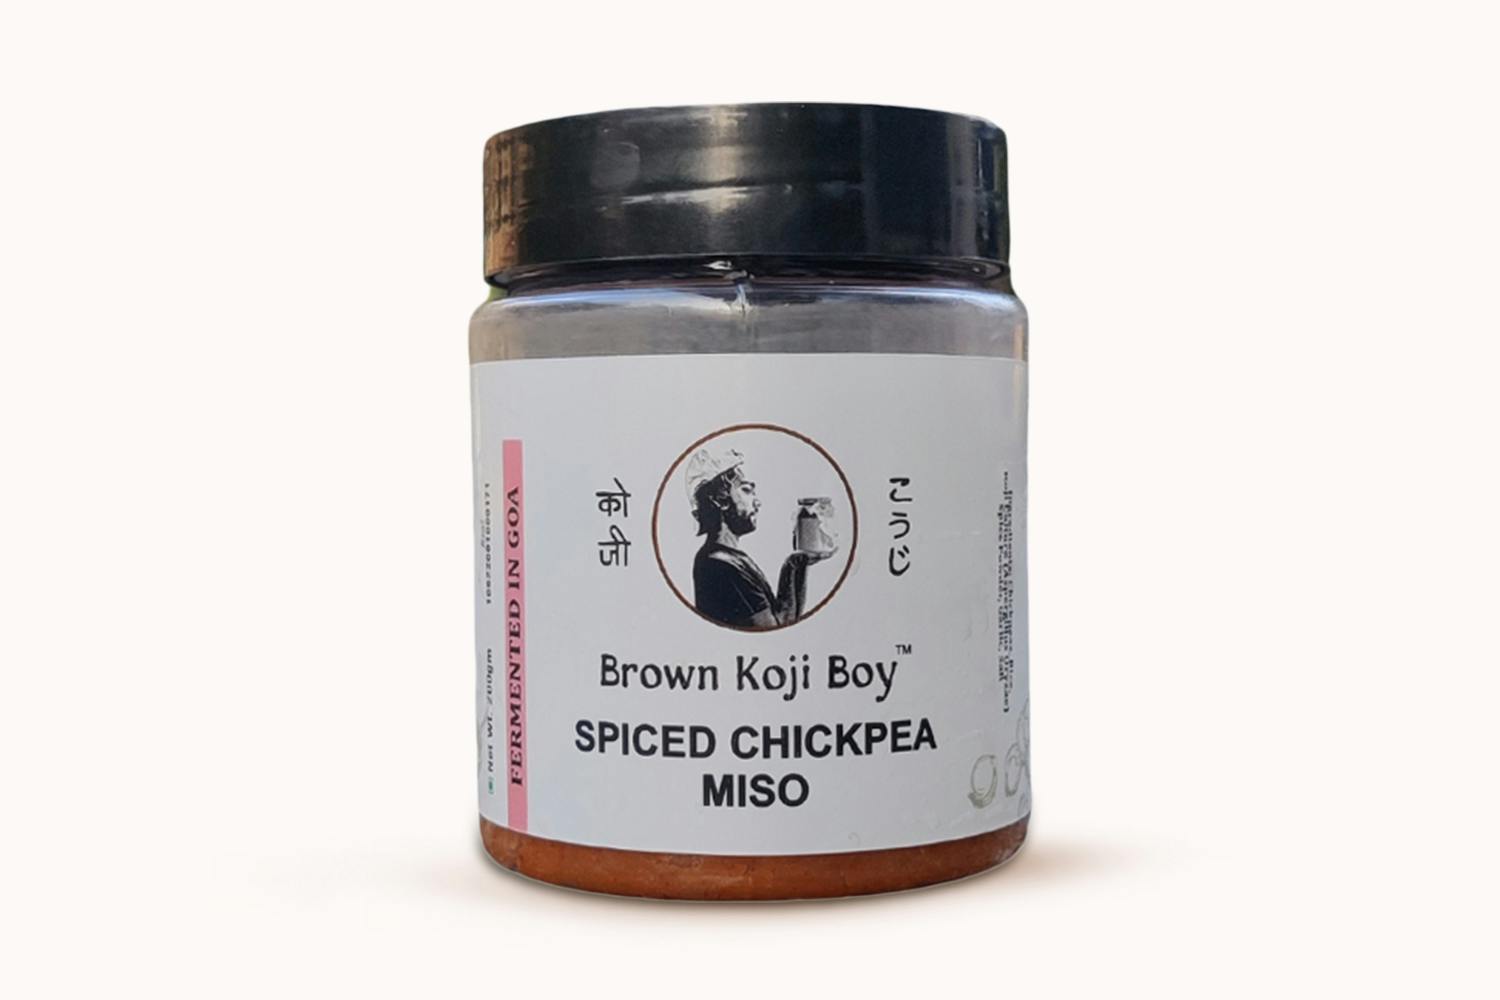 Brown Koji Boy Spiced Chickpea Miso